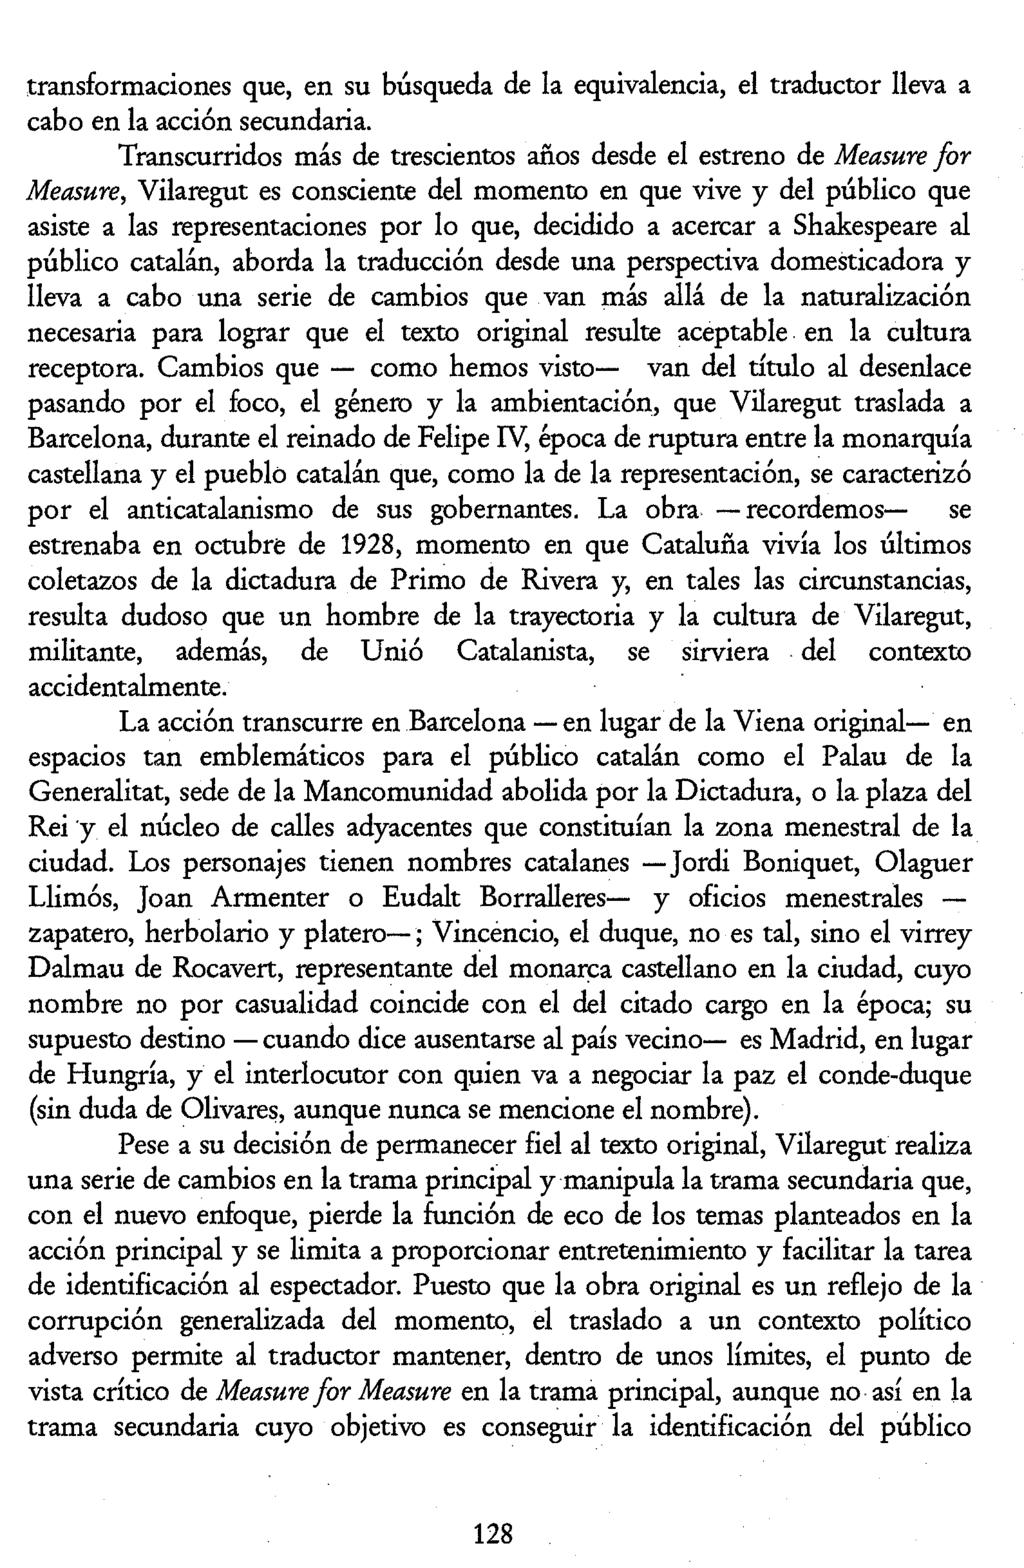 Luis Pegenaute (Ed.) La traducción en la Edad de Plata pic